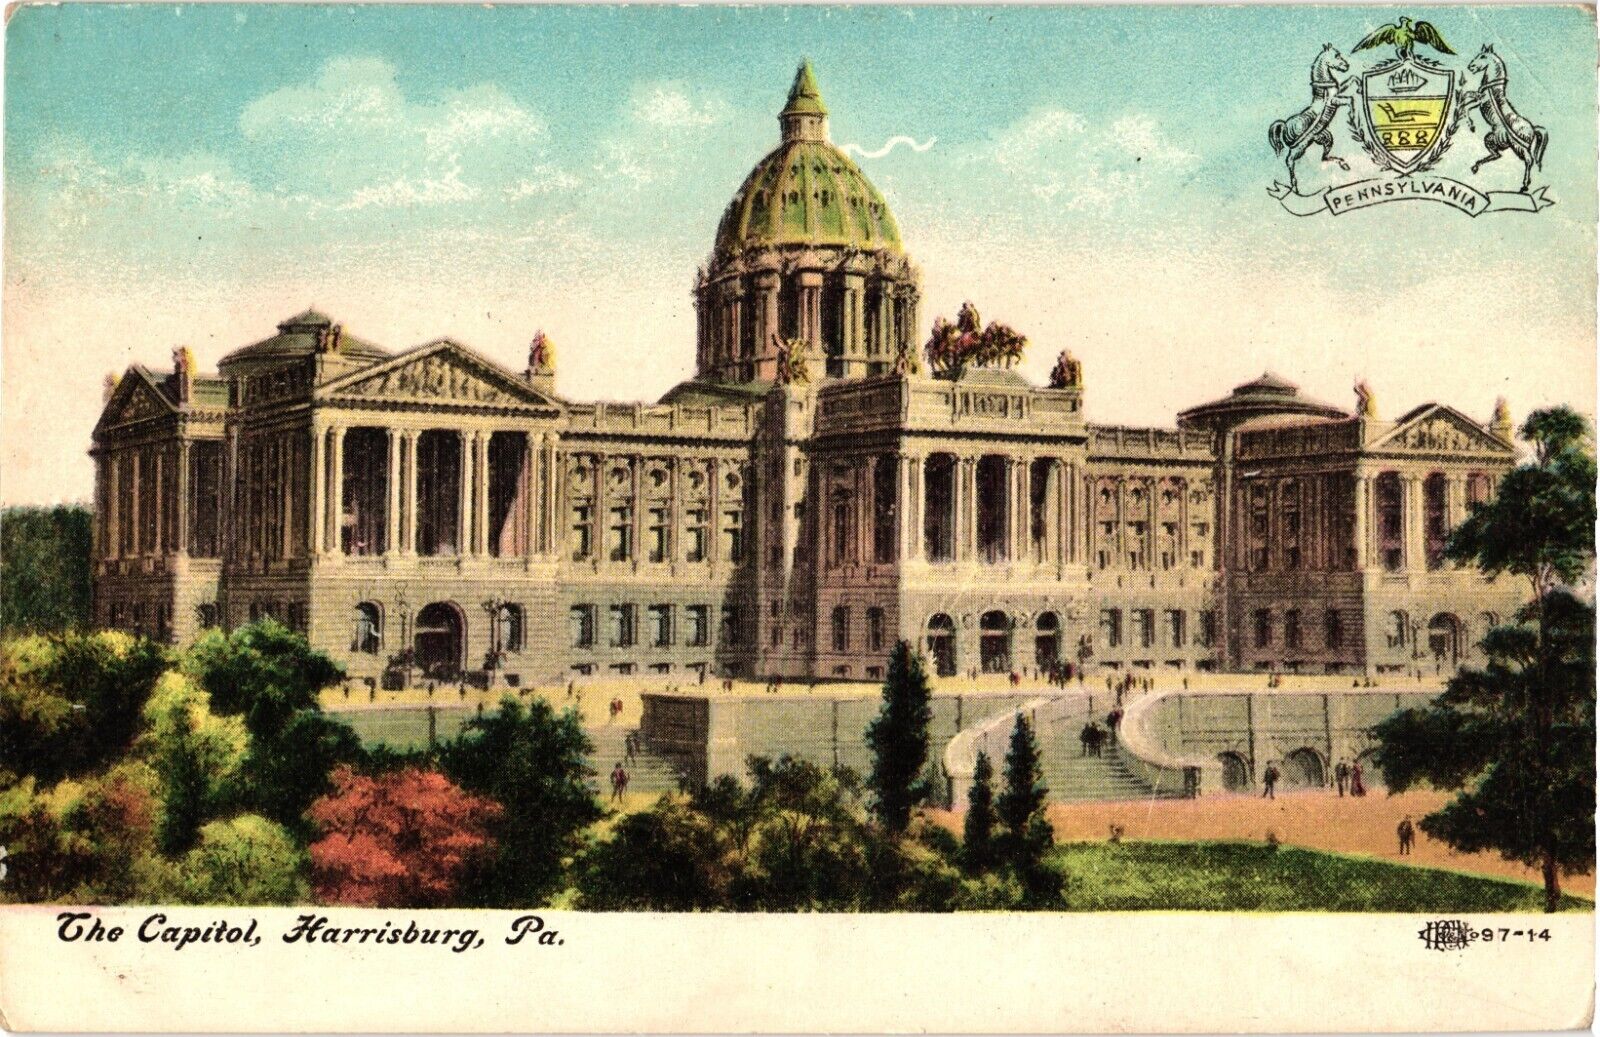 The Capitol Harrisburg Pennsylvania Emblem Coat of Arms Postcard